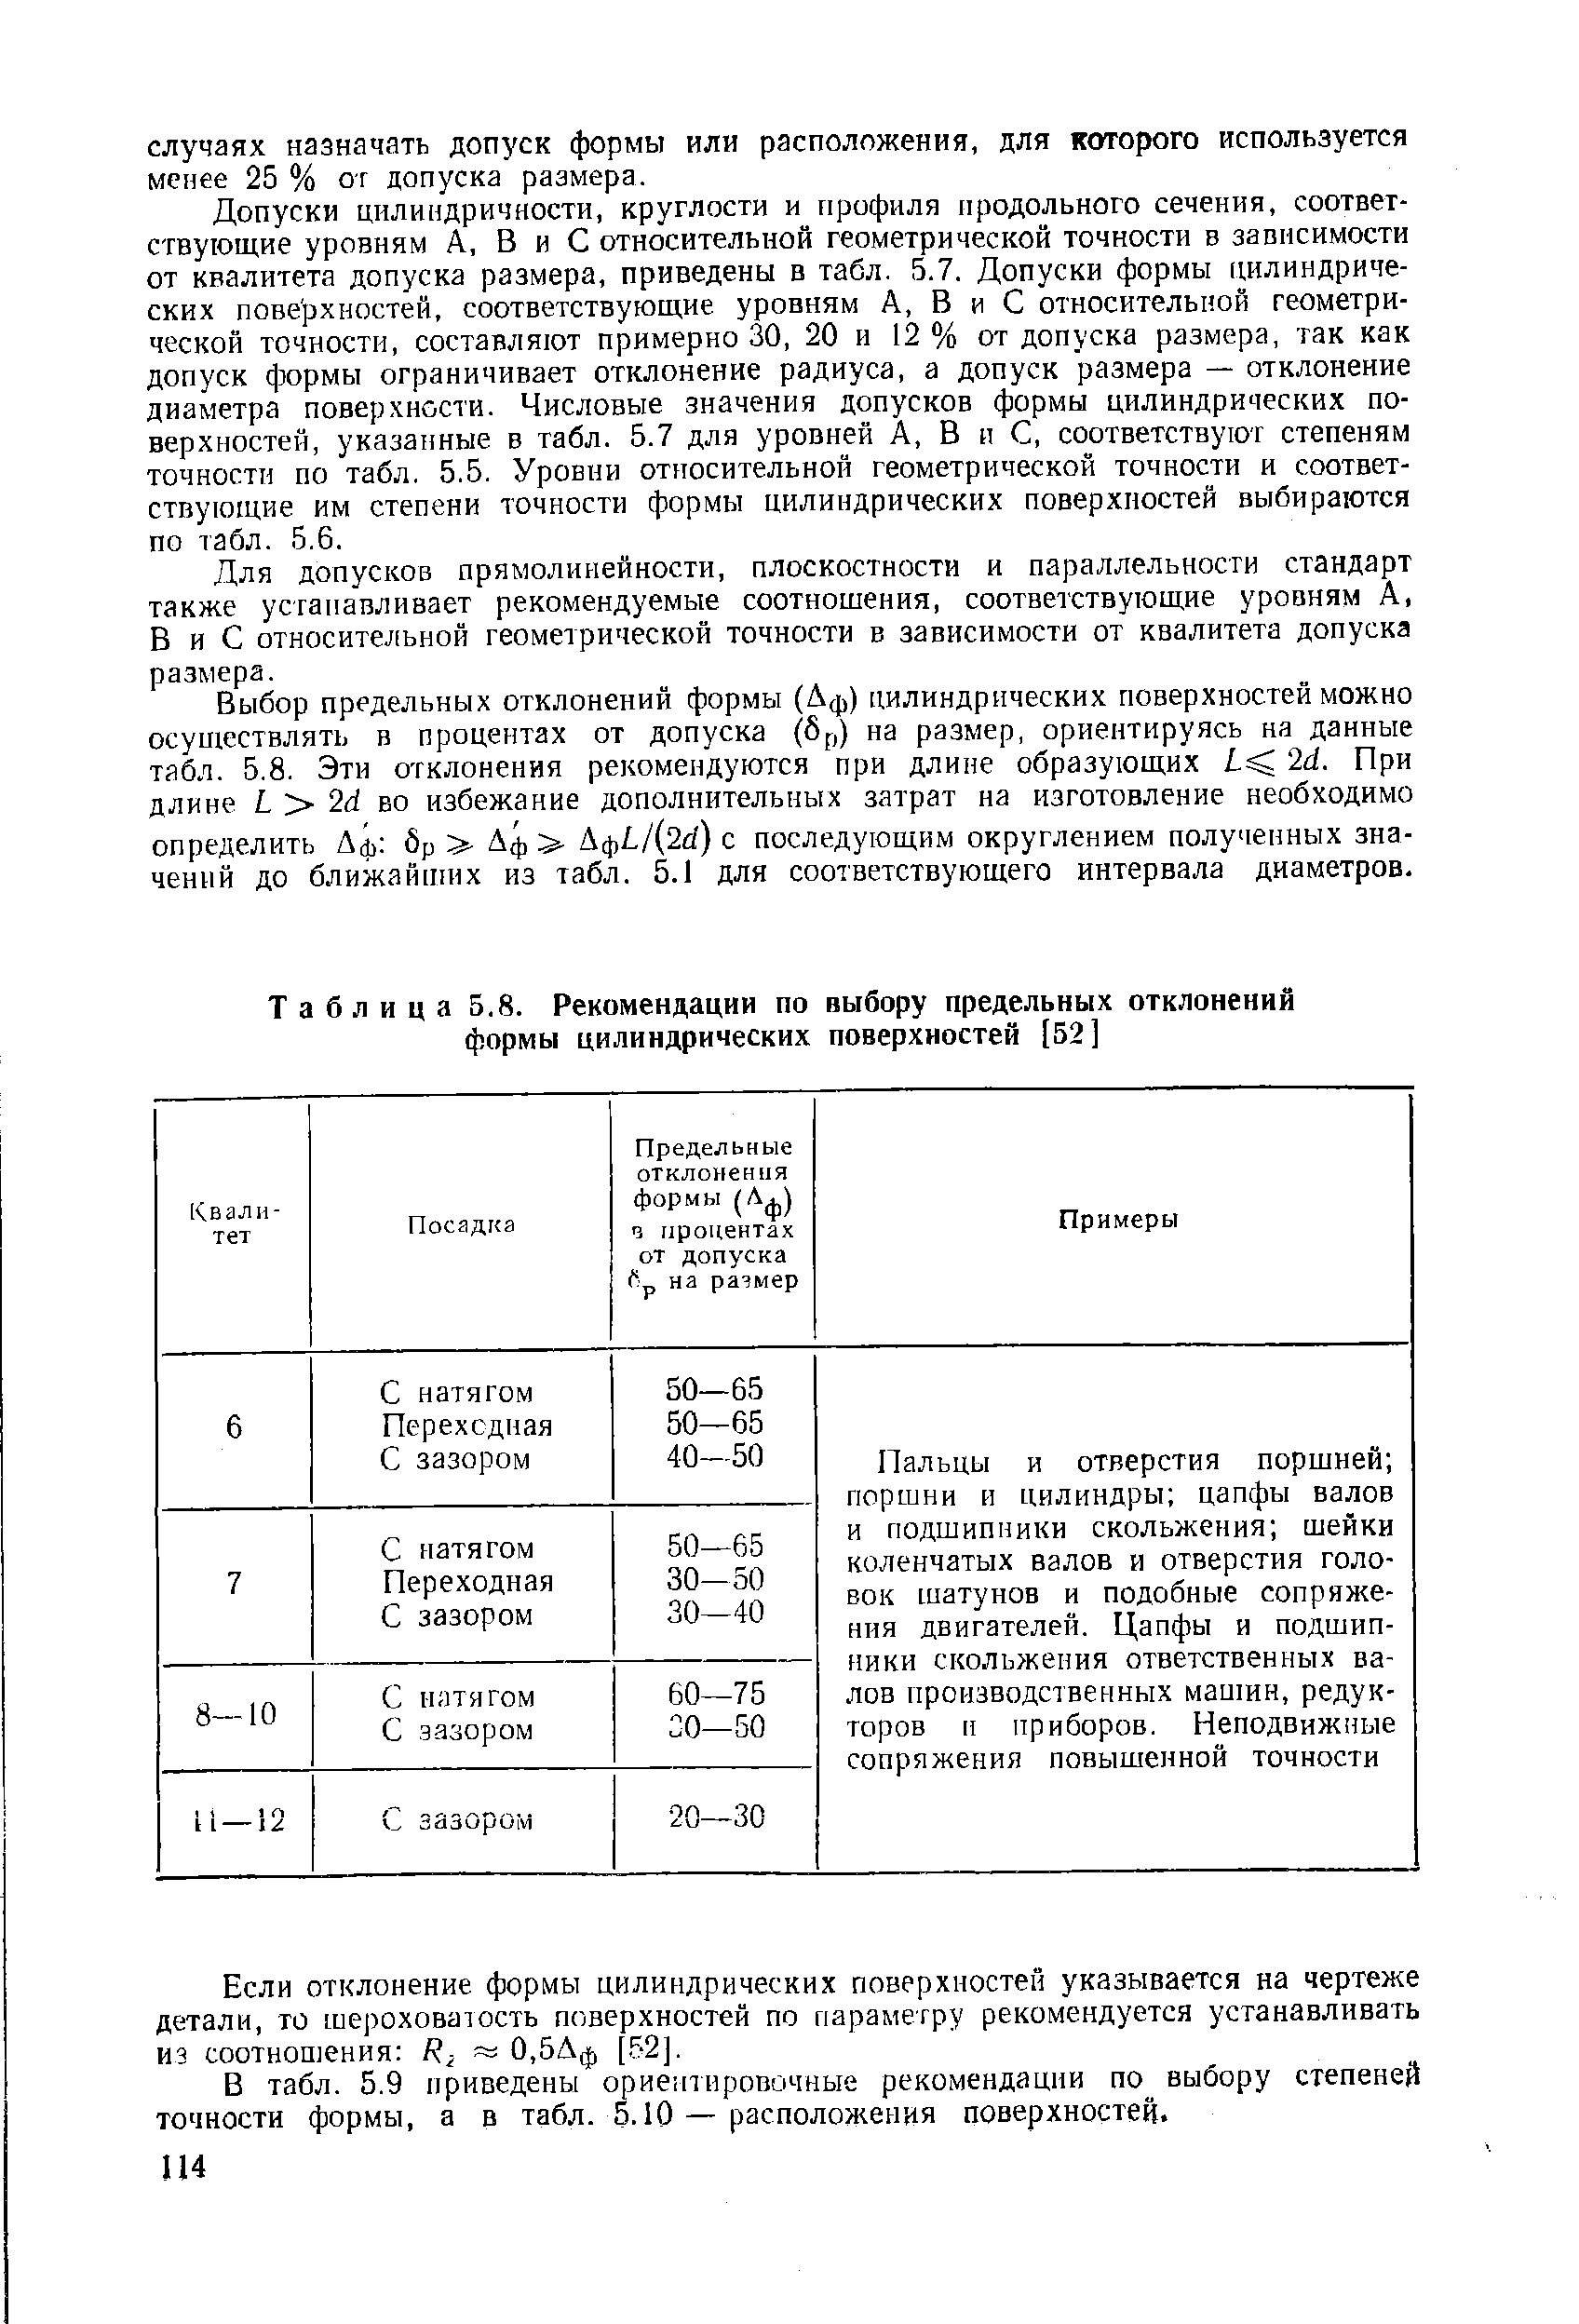 Таблица 5.8. Рекомендации по выбору предельных отклонений формы цилиндрических поверхиостей [52]
